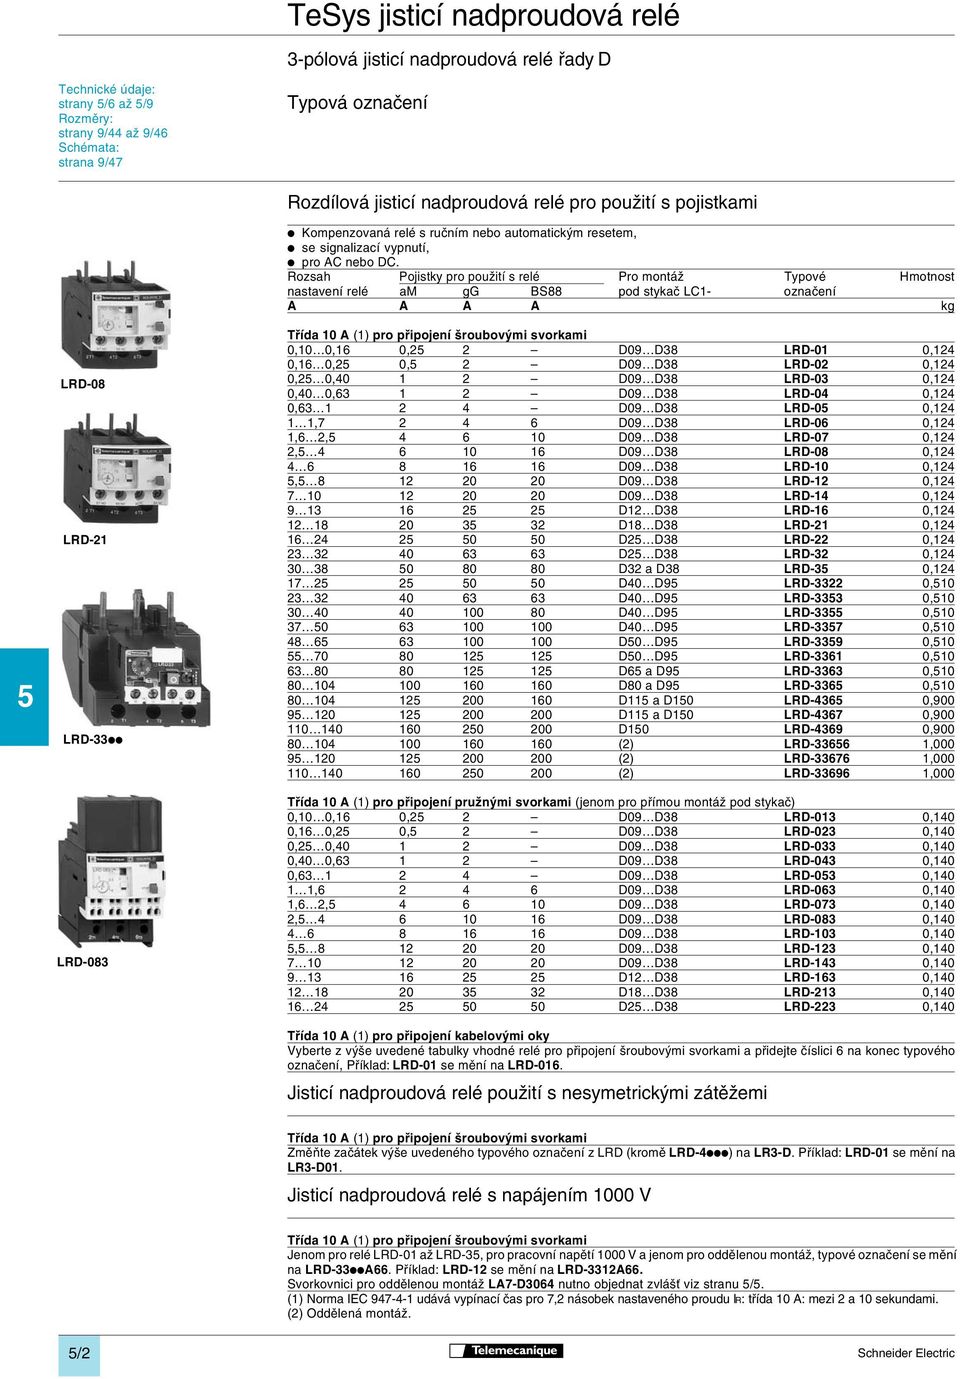 Rozsah Pojistky pro použití s relé Pro montáž Typové Hmotnost nastavení relé am gg BS88 pod stykač LC1- označení A A A A kg Třída 10 A (1) pro připojení šroubovými svorkami 0,10 0,16 0,25 2 D09 D38